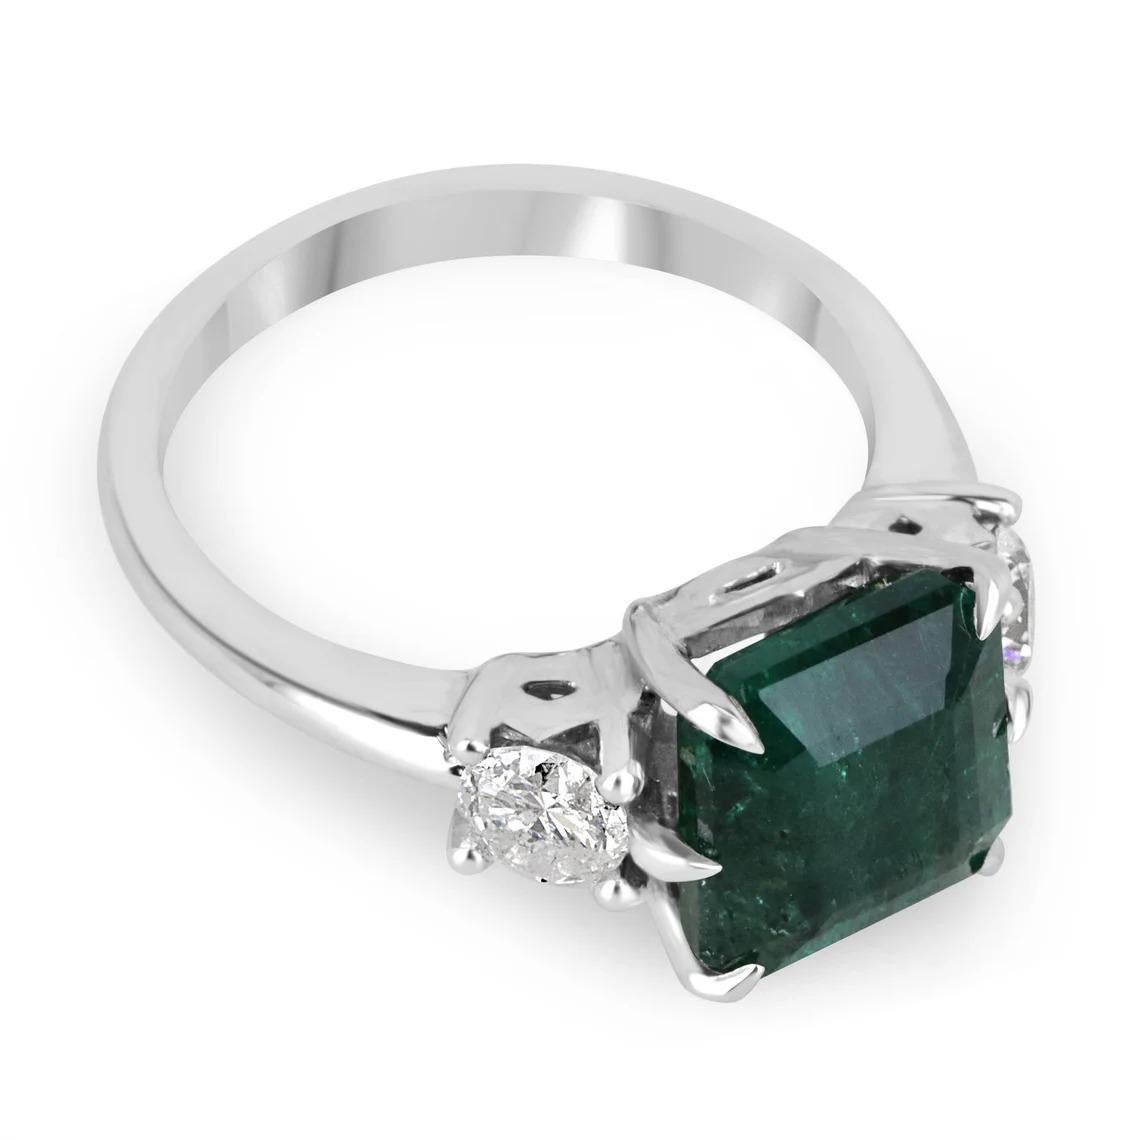 Ein Ring mit drei Steinen aus Smaragd und Diamant. Dieses exquisite Stück zeigt einen großen natürlichen Smaragd im Asscher-Schliff, der eine hinreißende, tiefgrüne Farbe mit sehr gutem Glanz und Klarheit aufweist. Der Mittelstein wird von zwei